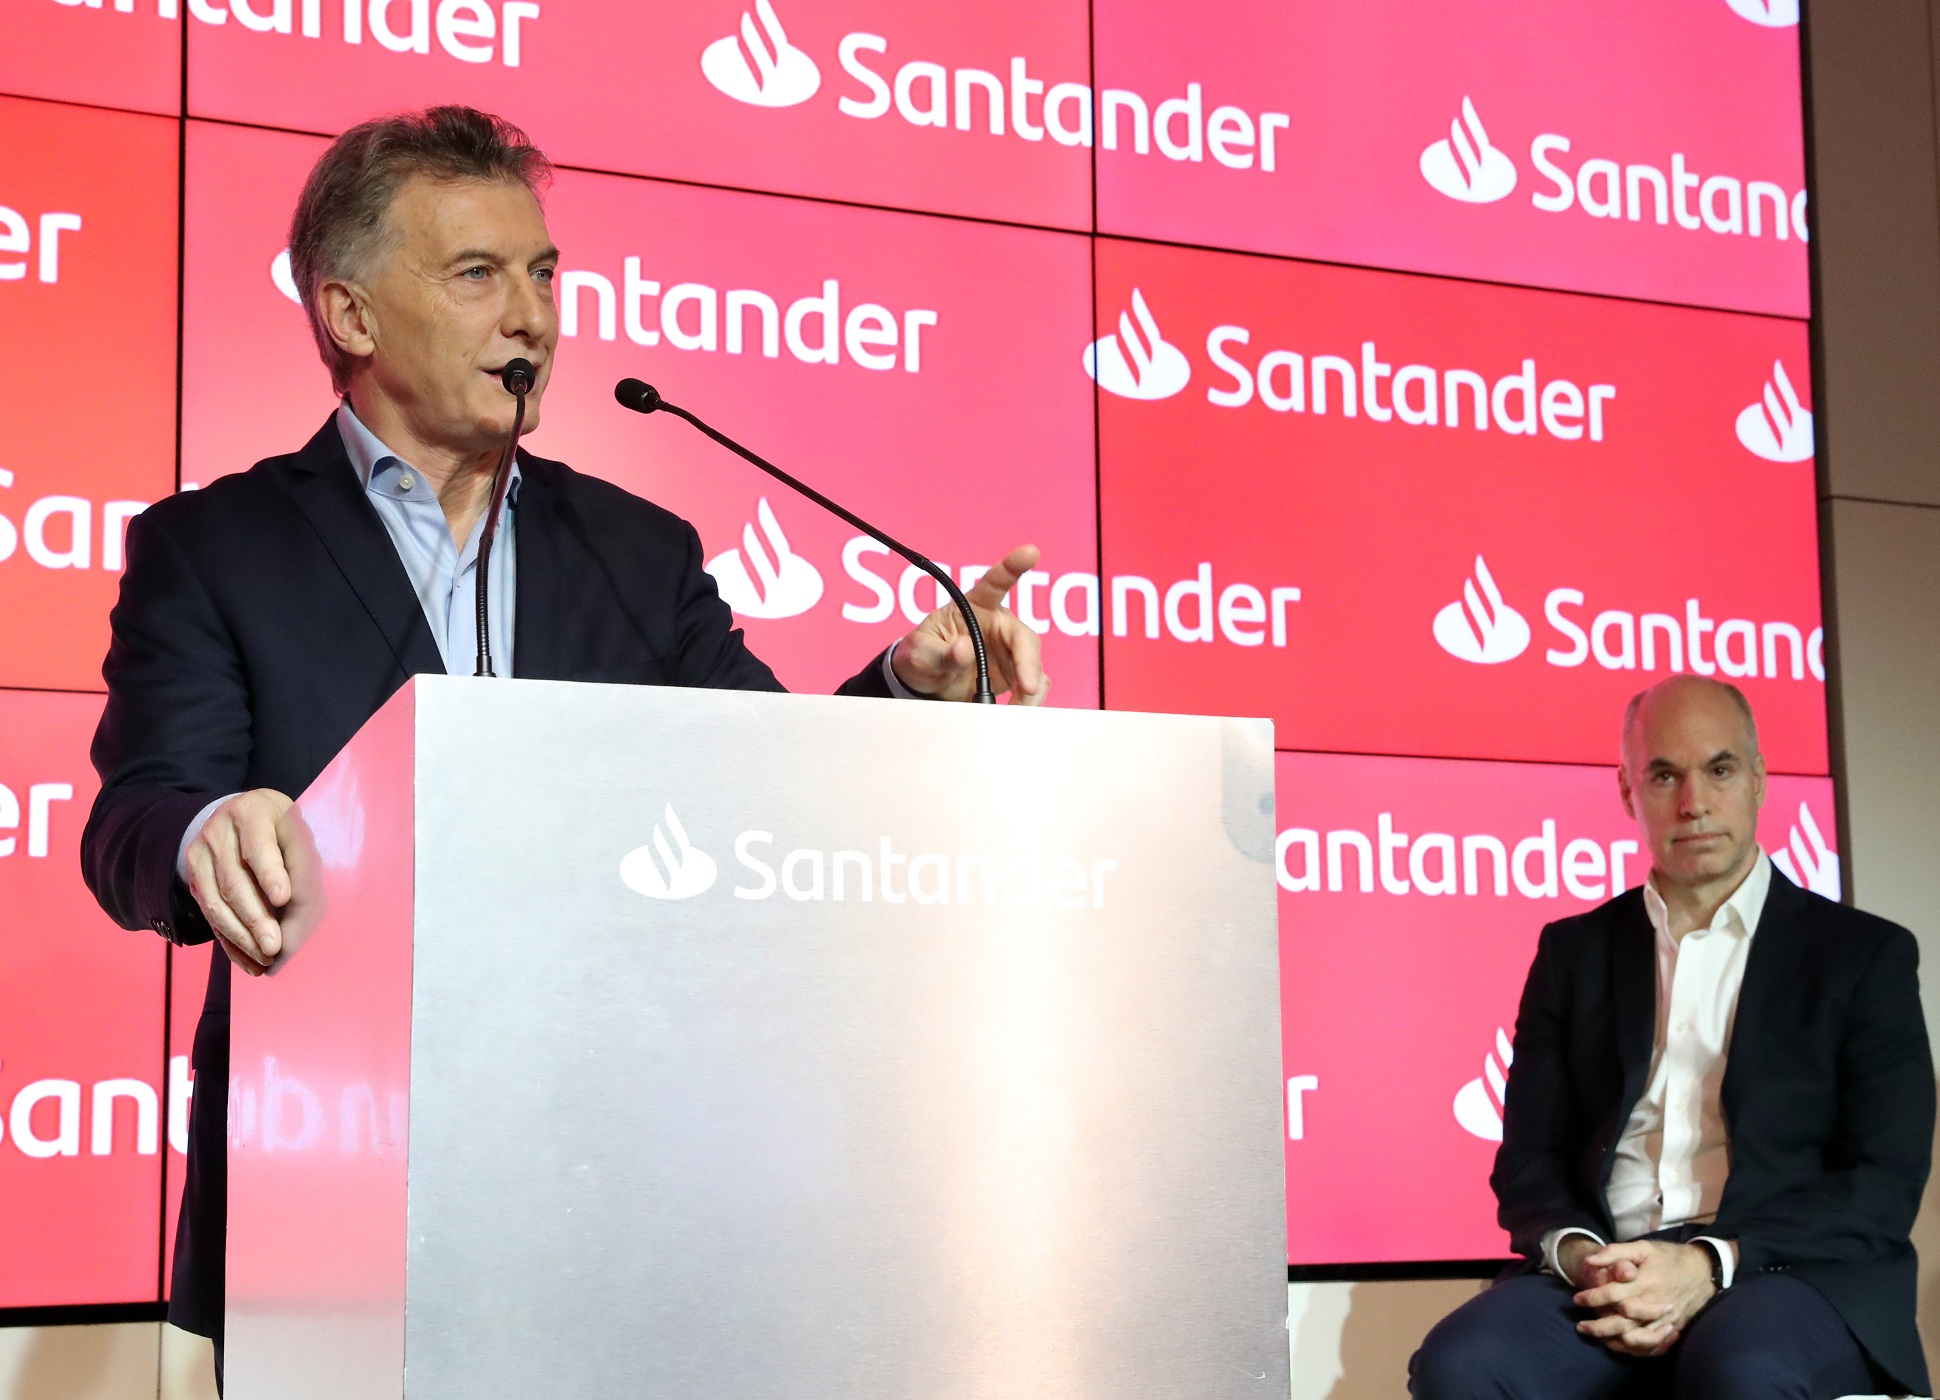 El presidente Macri participó en la inauguración de un nuevo edificio del Banco Santander